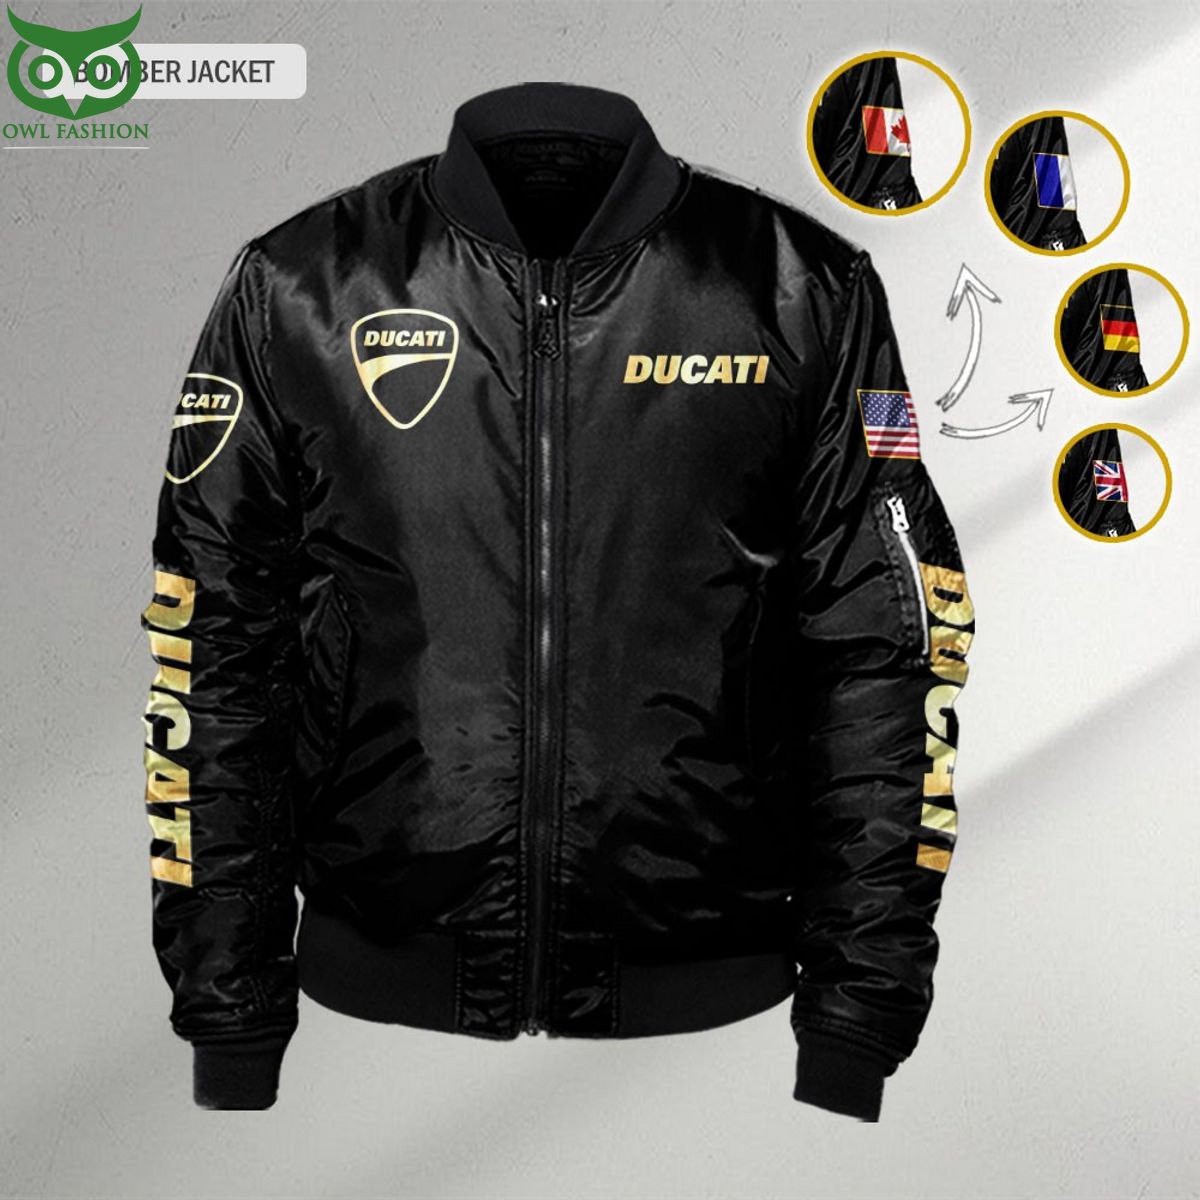 ducatti custom flag 3d bomber jacket 2 t2TOb.jpg